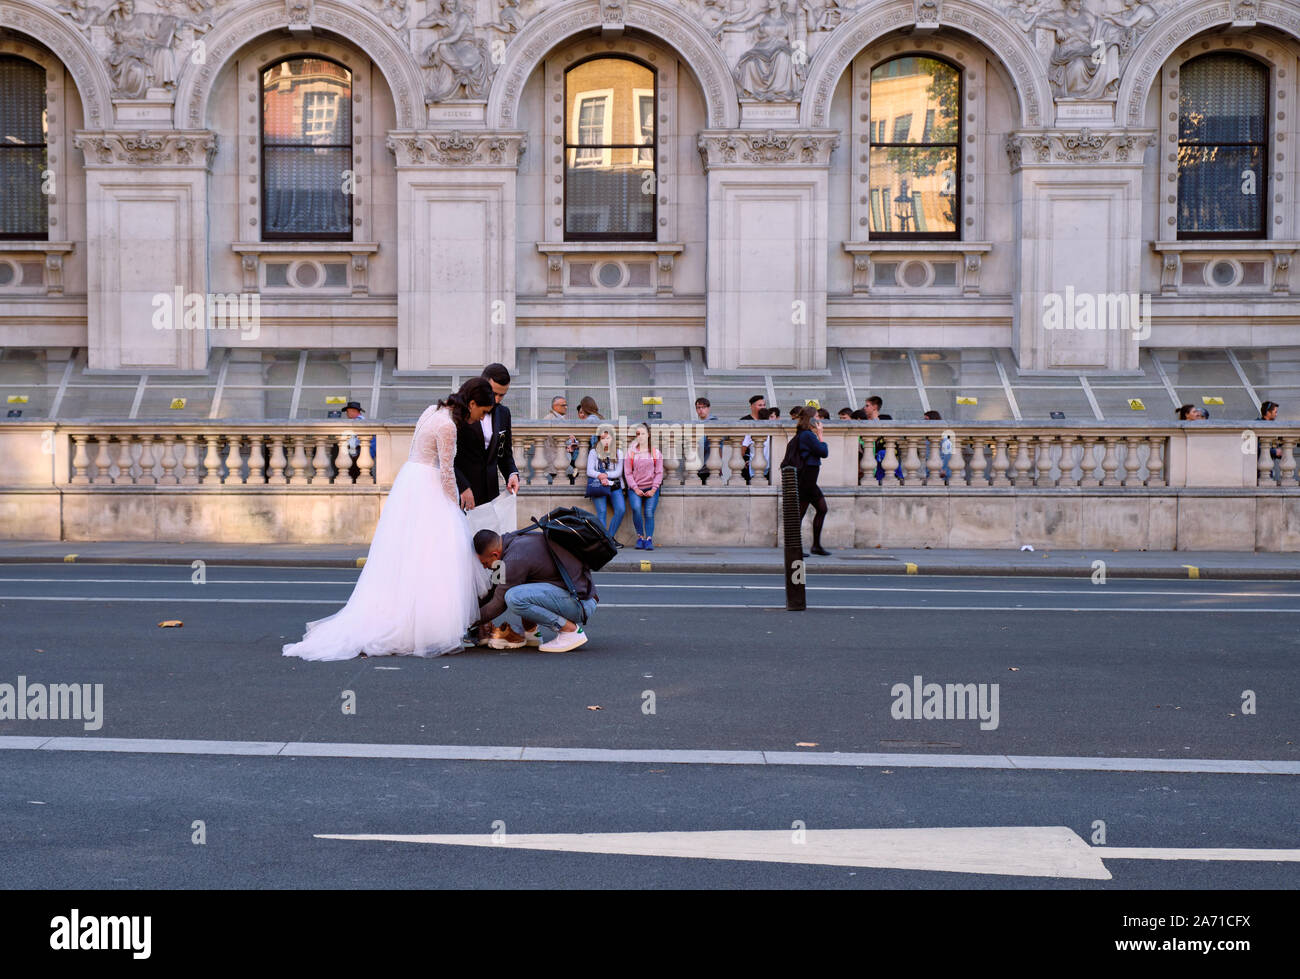 Fotograf einrichten Paar für Hochzeit Bild schiessen in der Mitte der Straße in London. Stockfoto